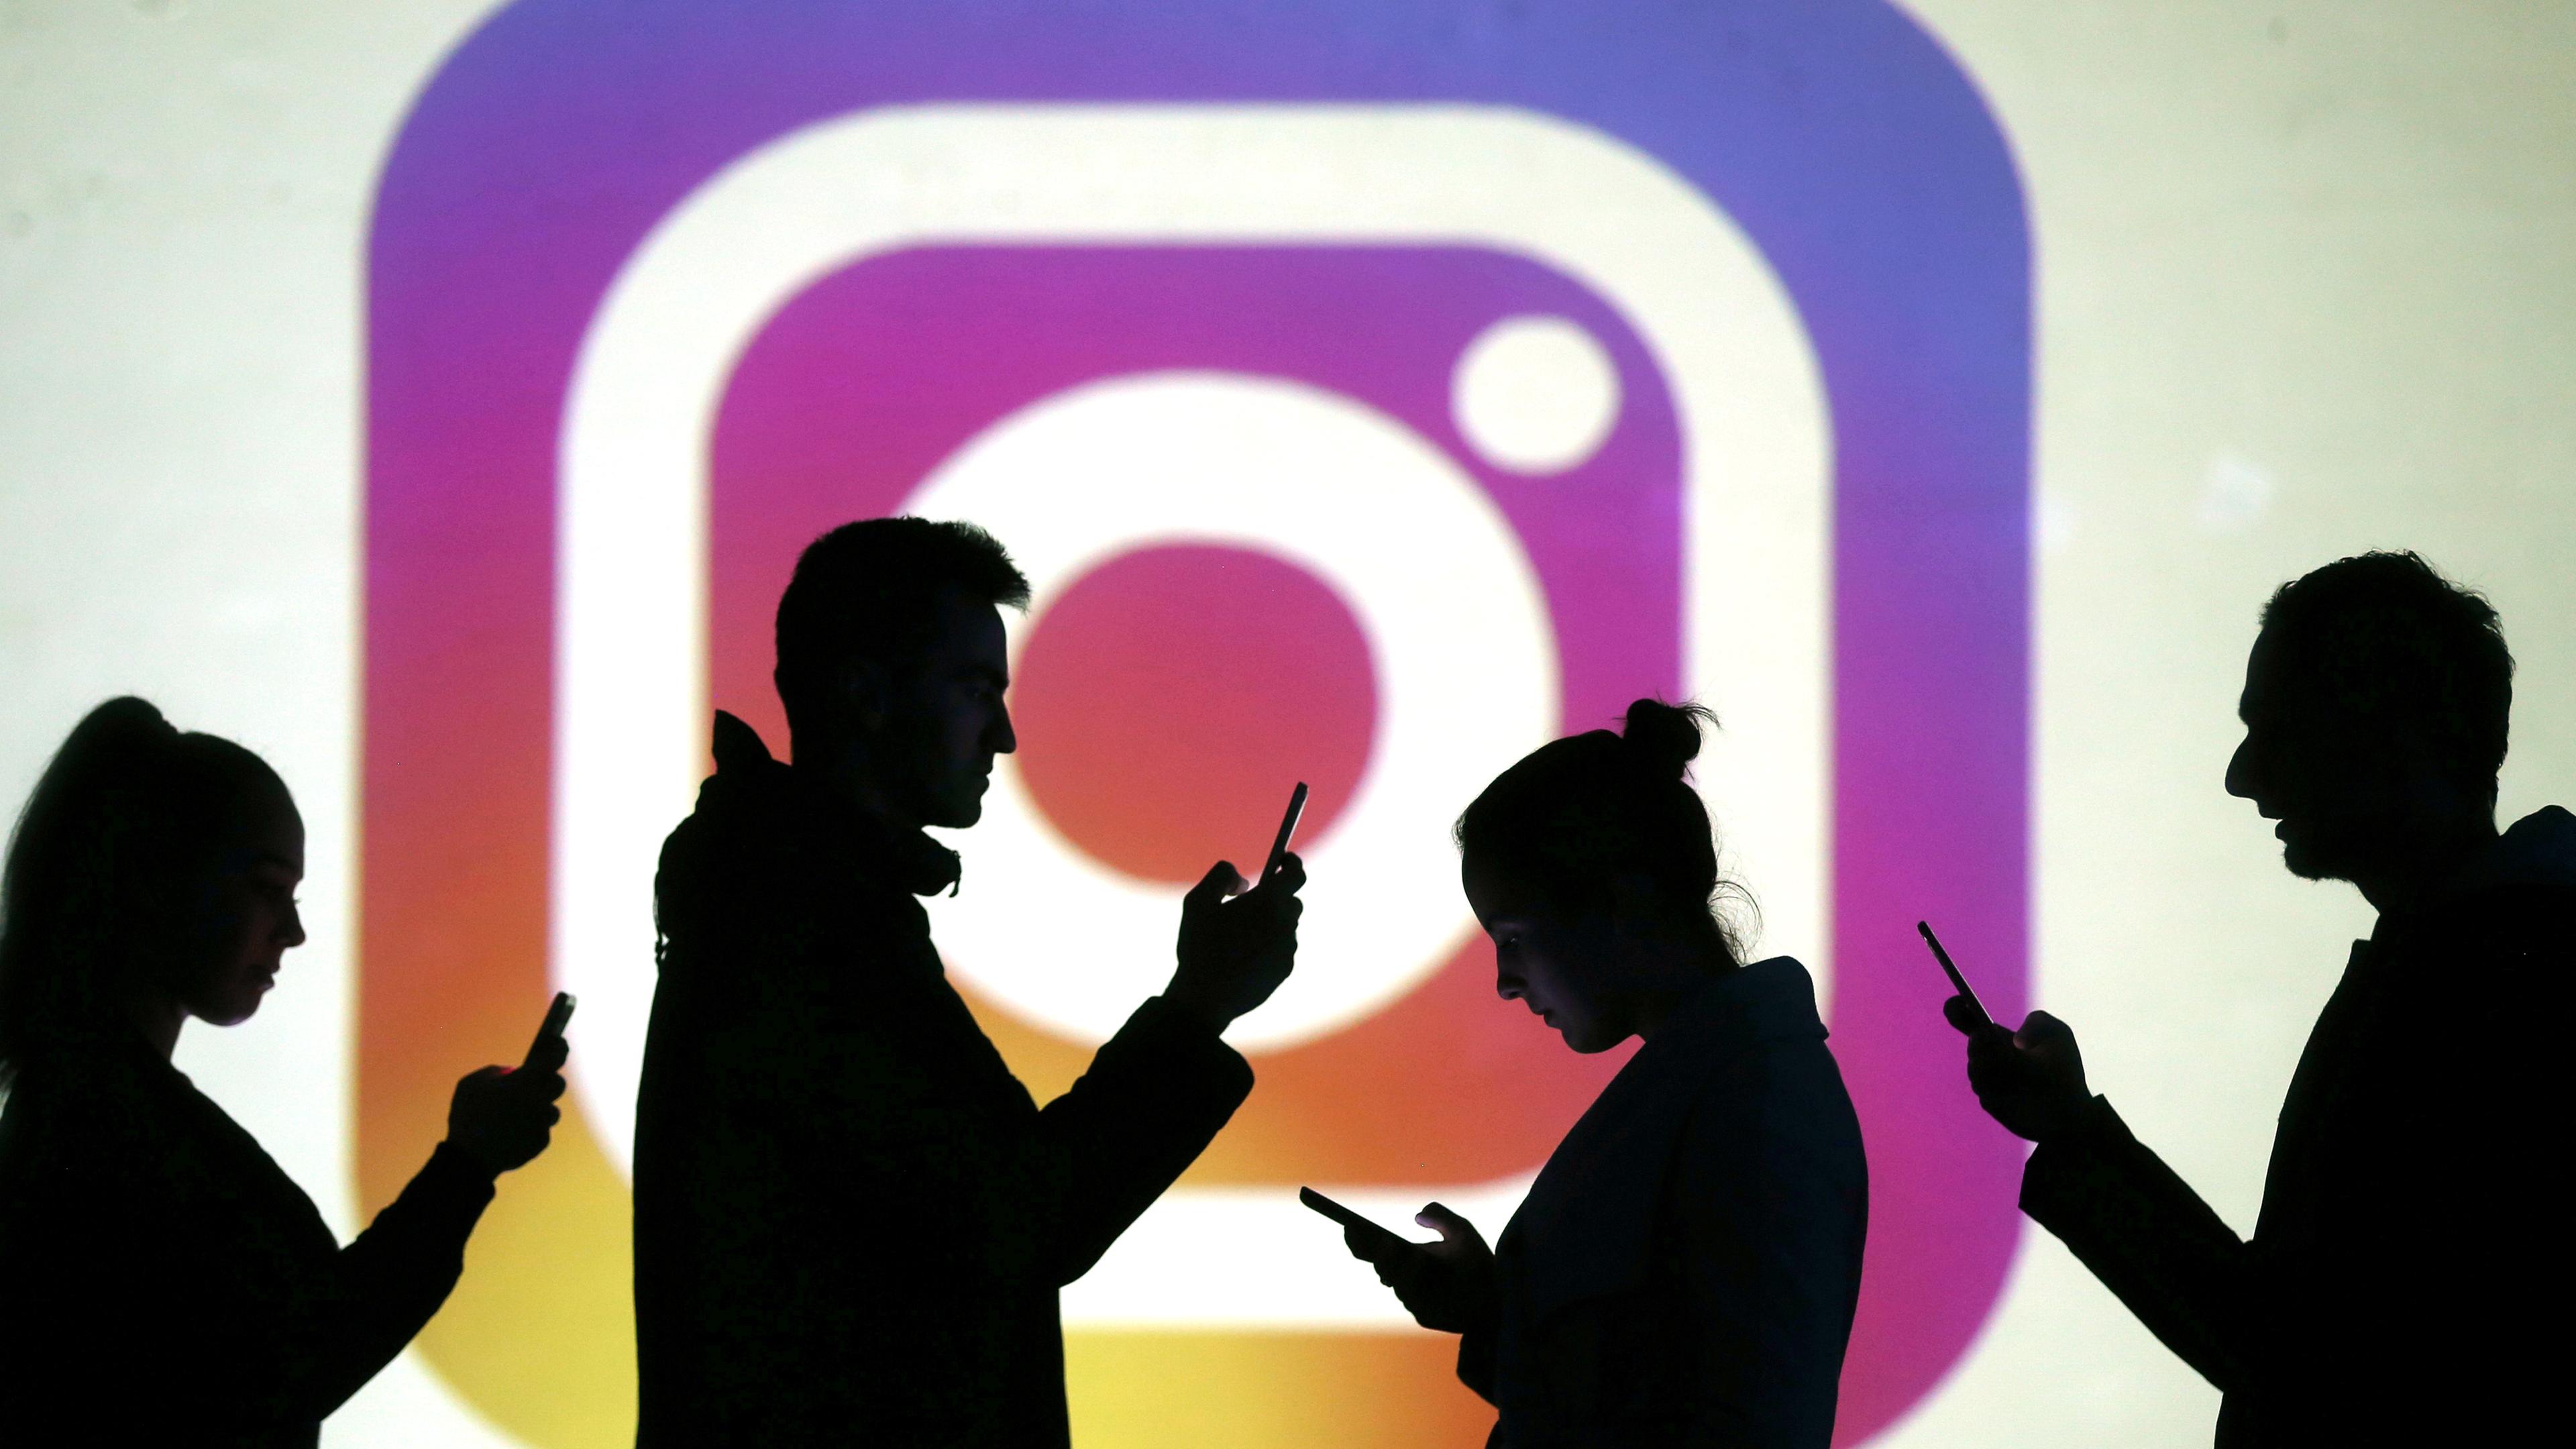 Symbolbild: Menschen stehen vor ein Instagramlogo, aufgenommen am 06.05.2019